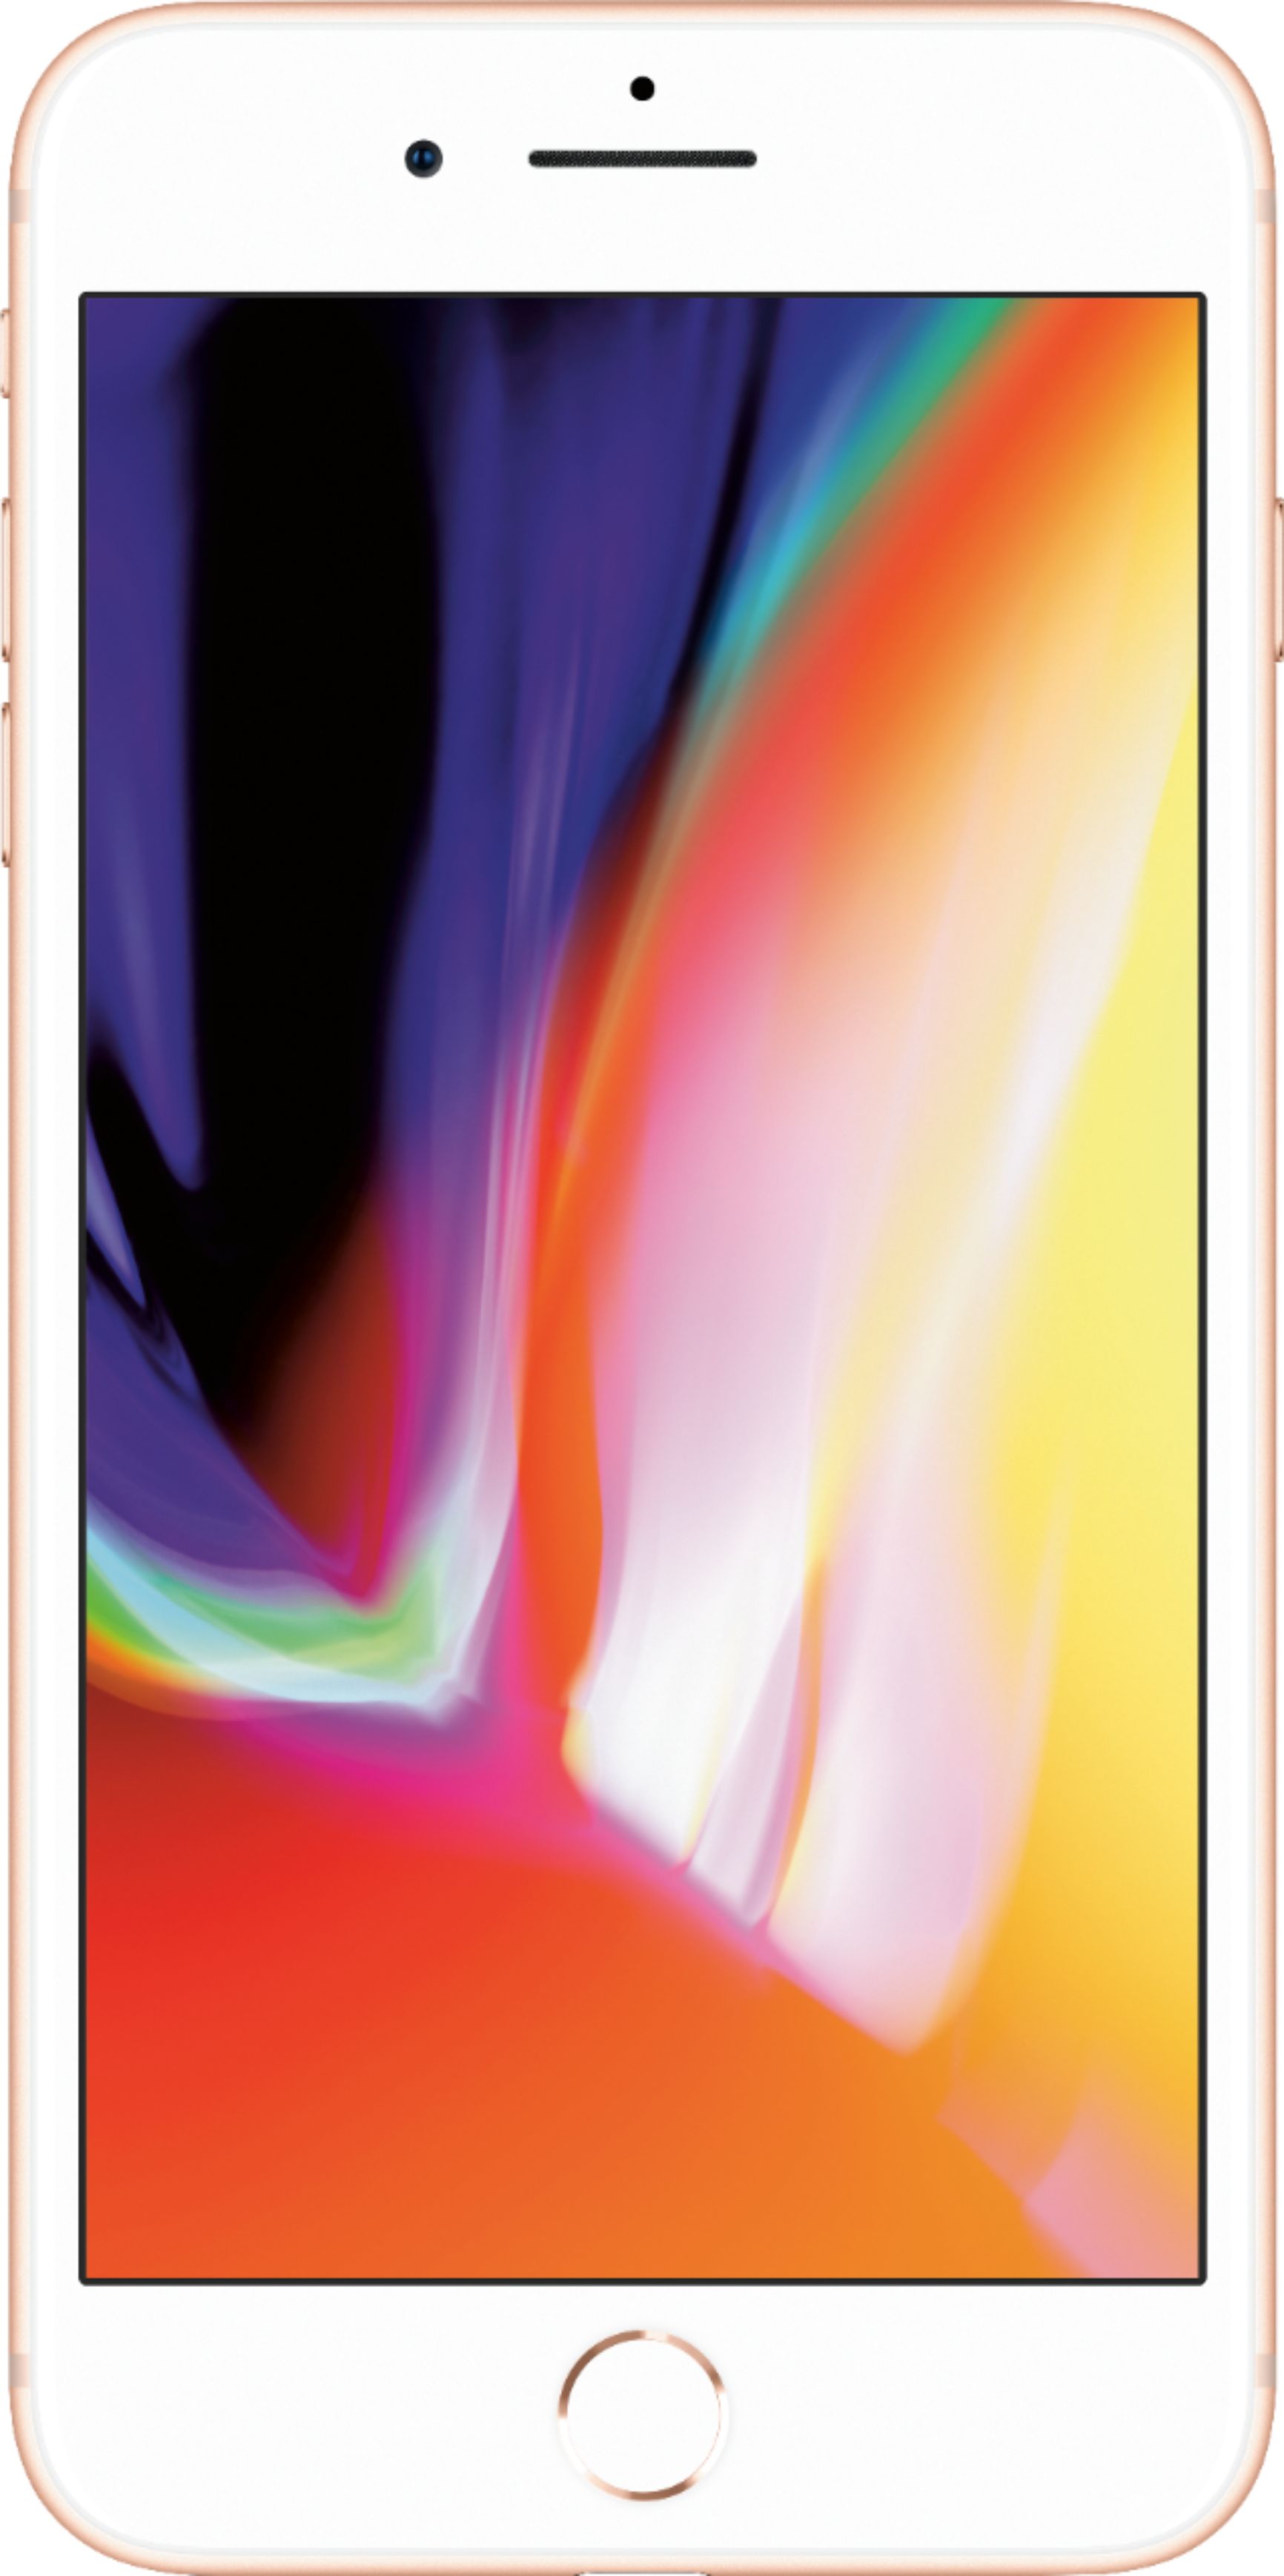 Apple iPhone 8 Plus 64GB Gold (Verizon) MQ8F2LL/A - Best Buy